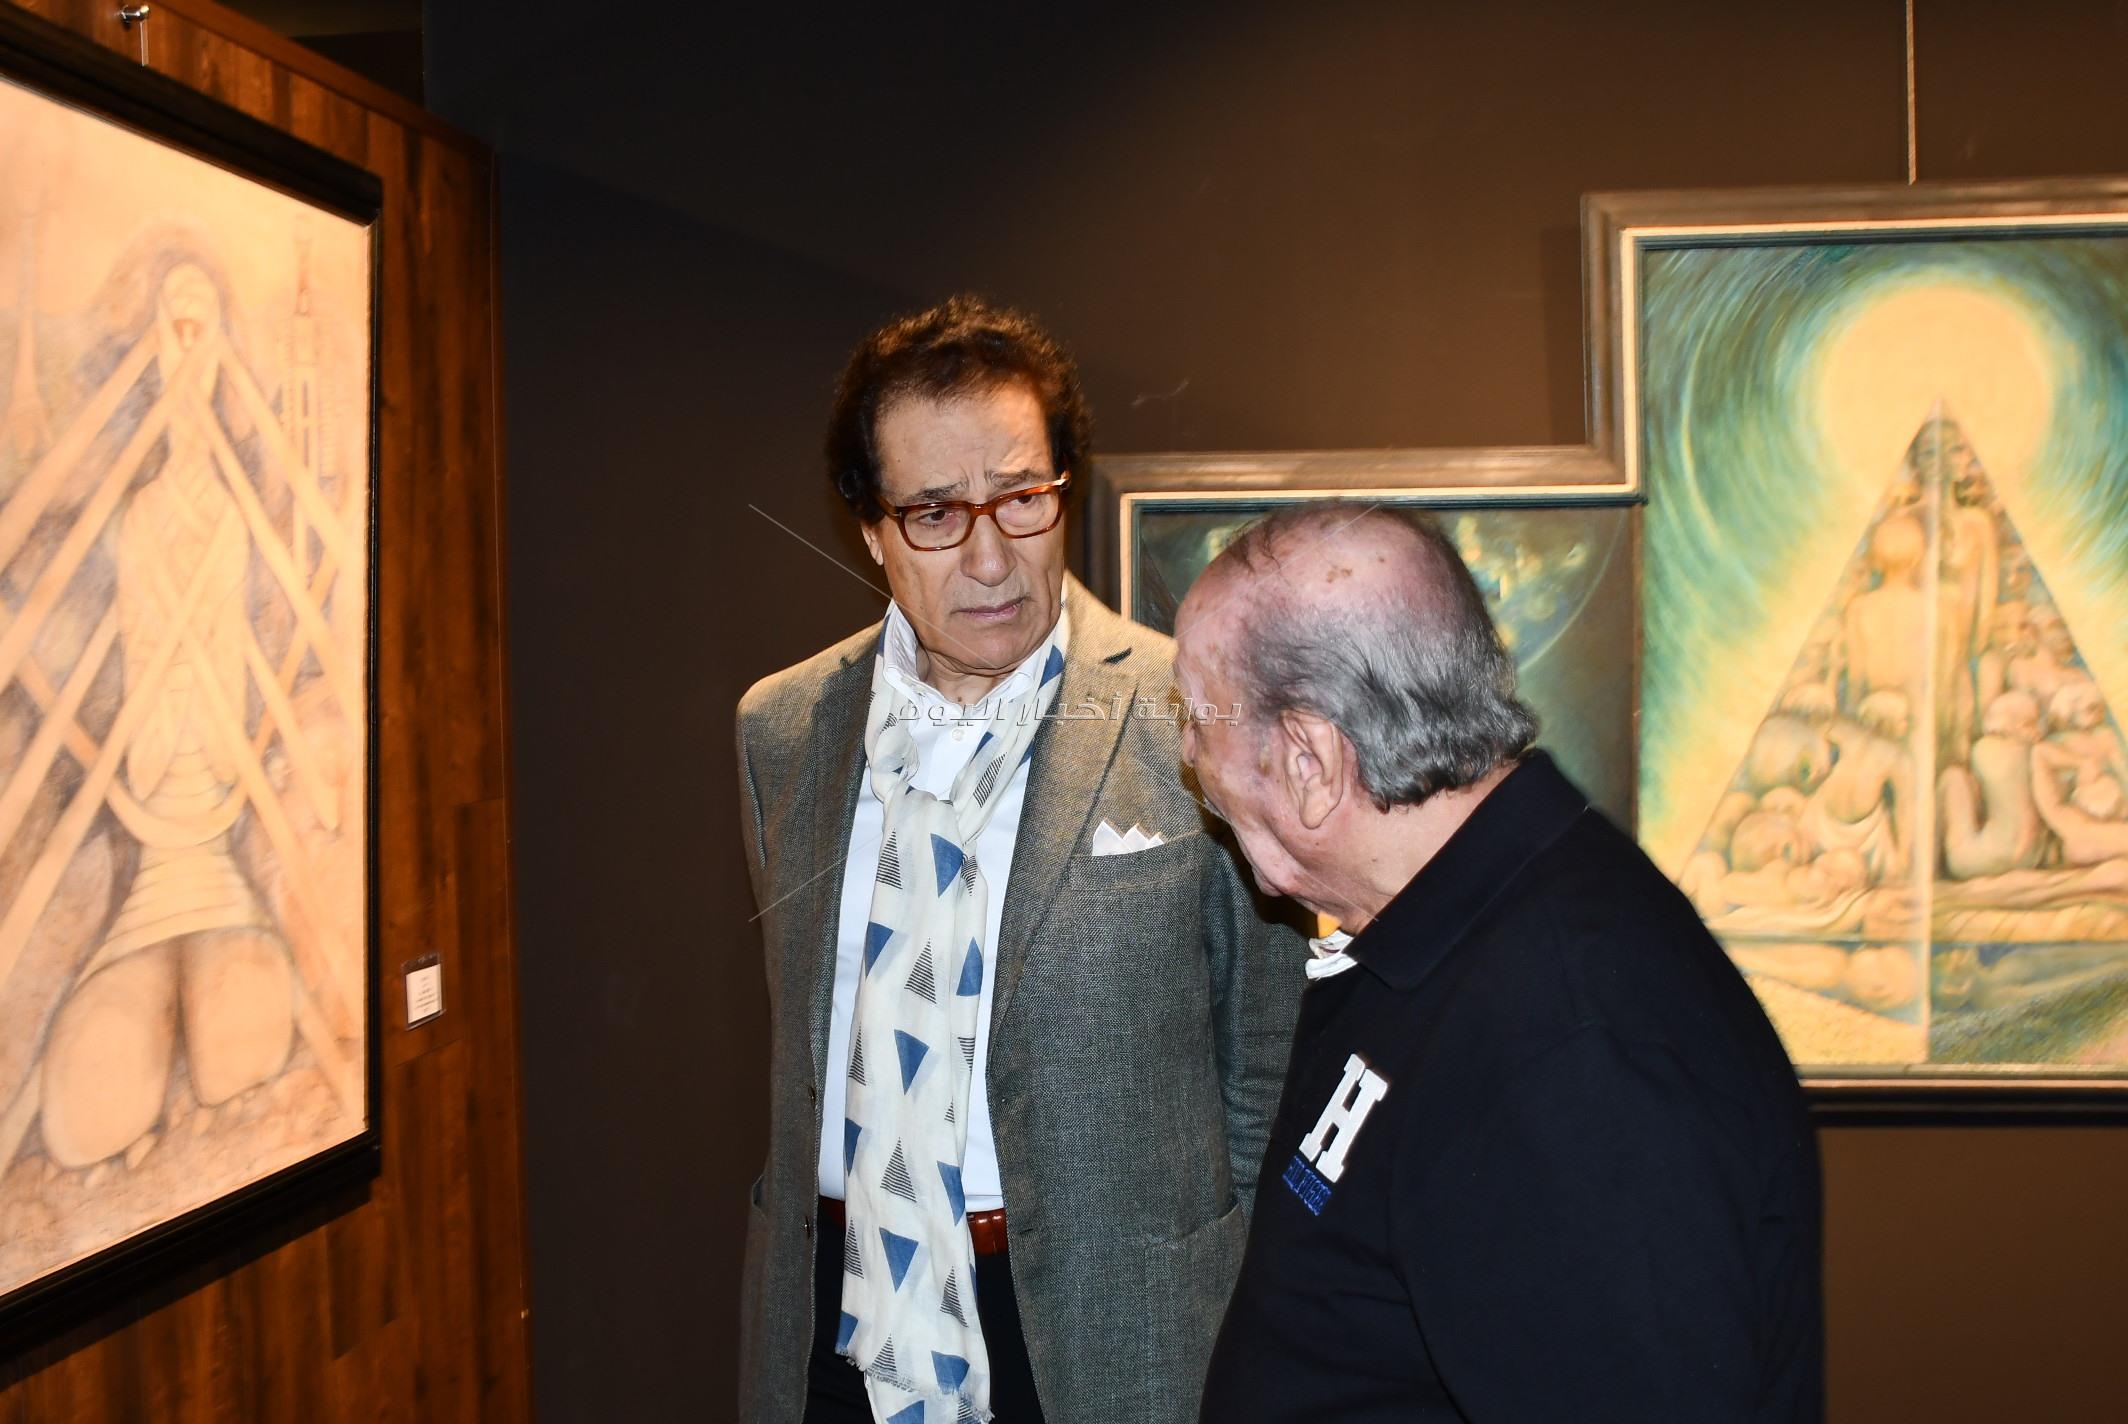 فاروق حسني يحضر معرض «الروح والذات» للفنان محمد فريد